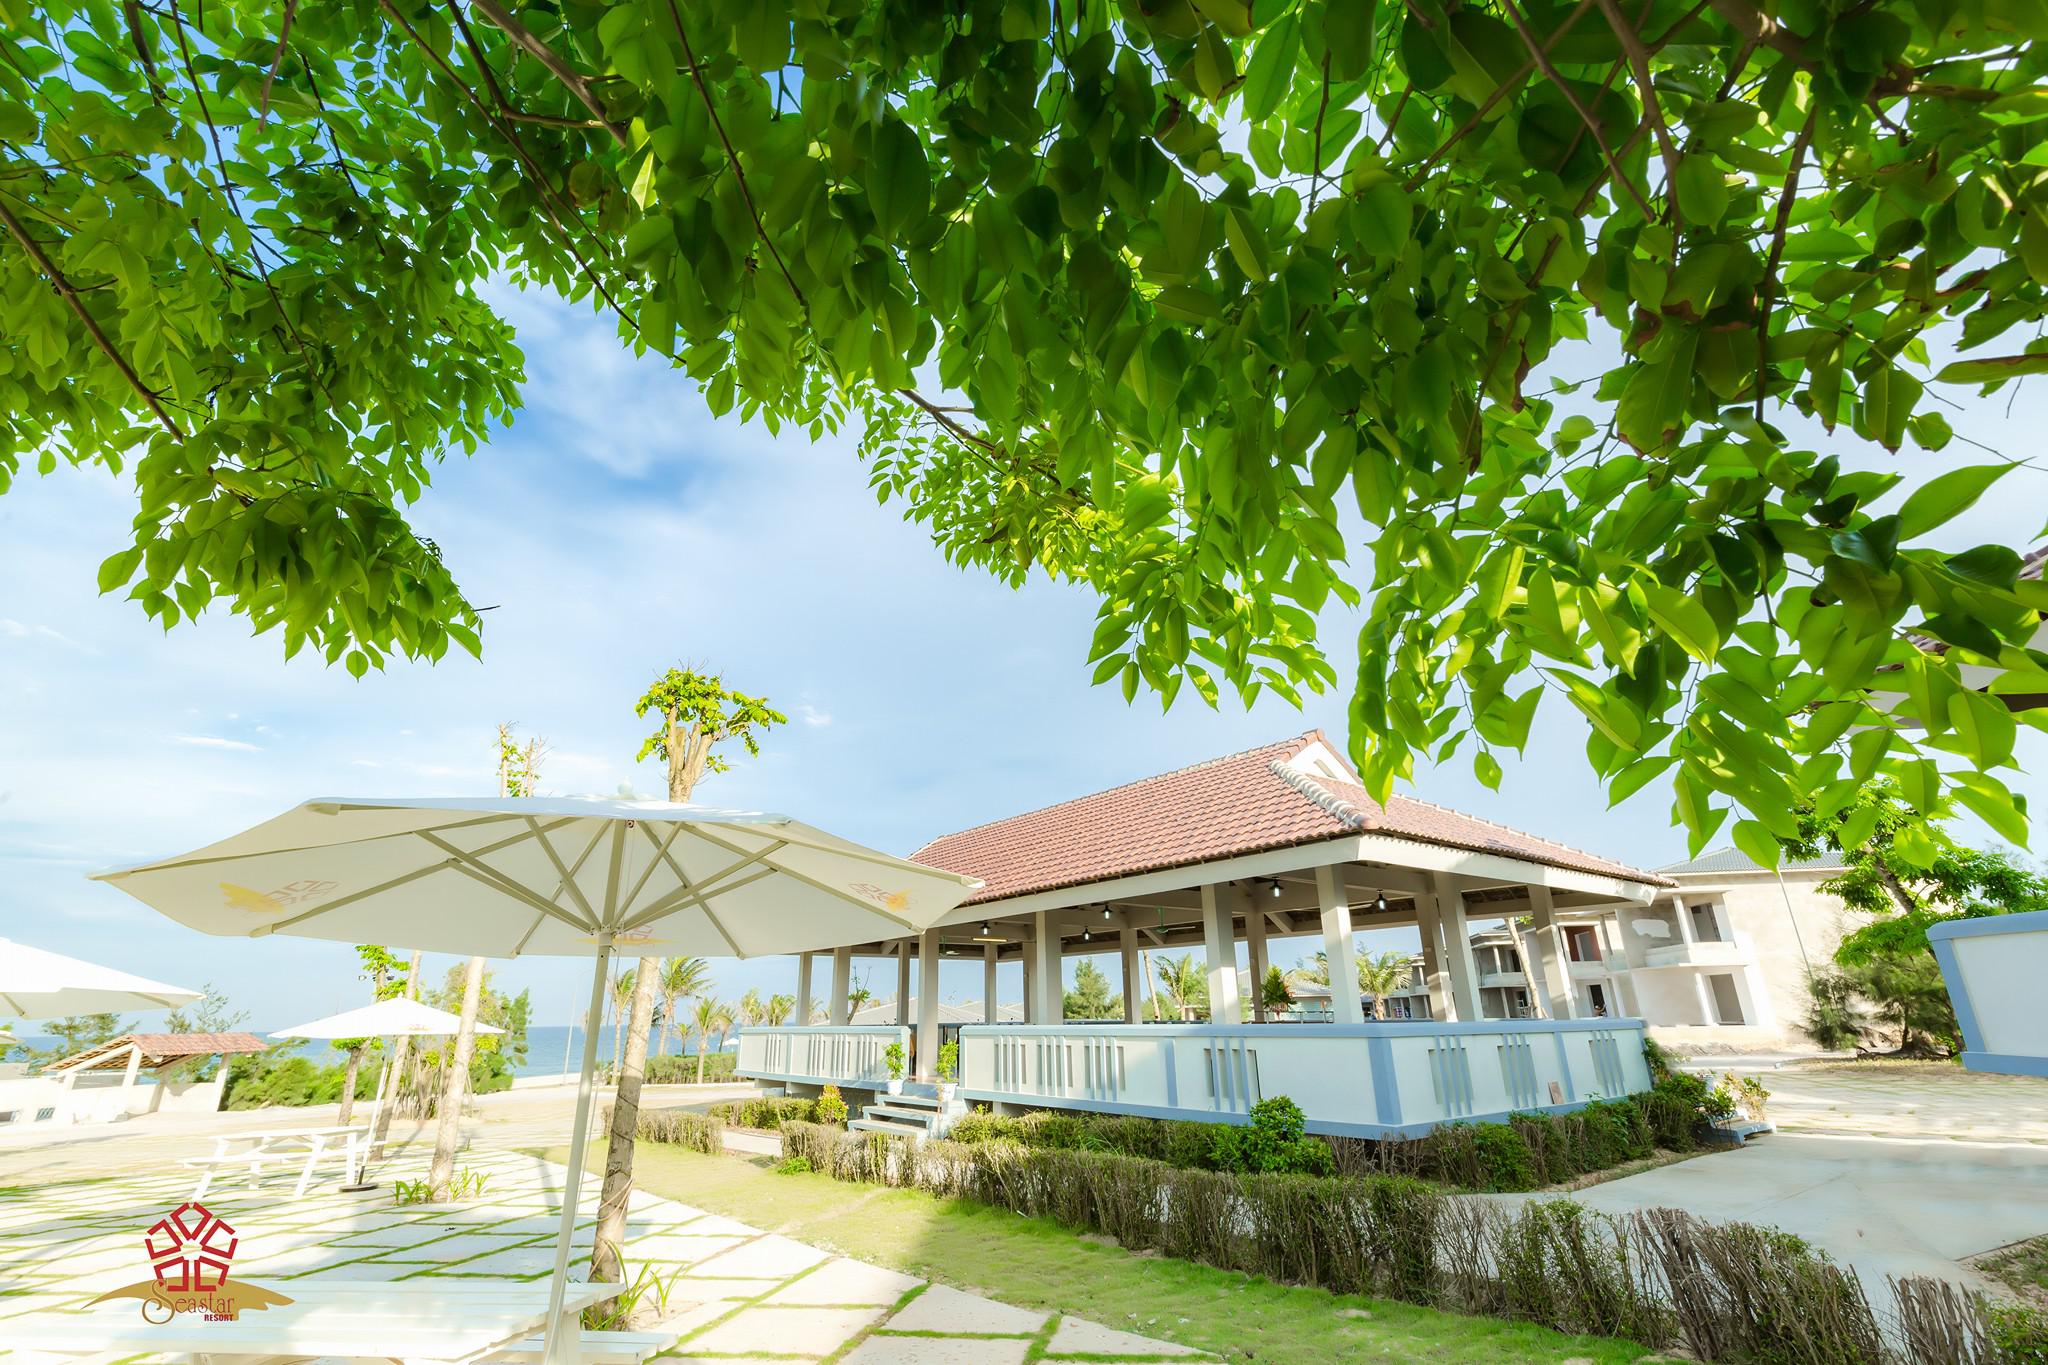 Sea Star Resort - Resort 4 sao sát biển tại Đồng Hới - Quảng Bình